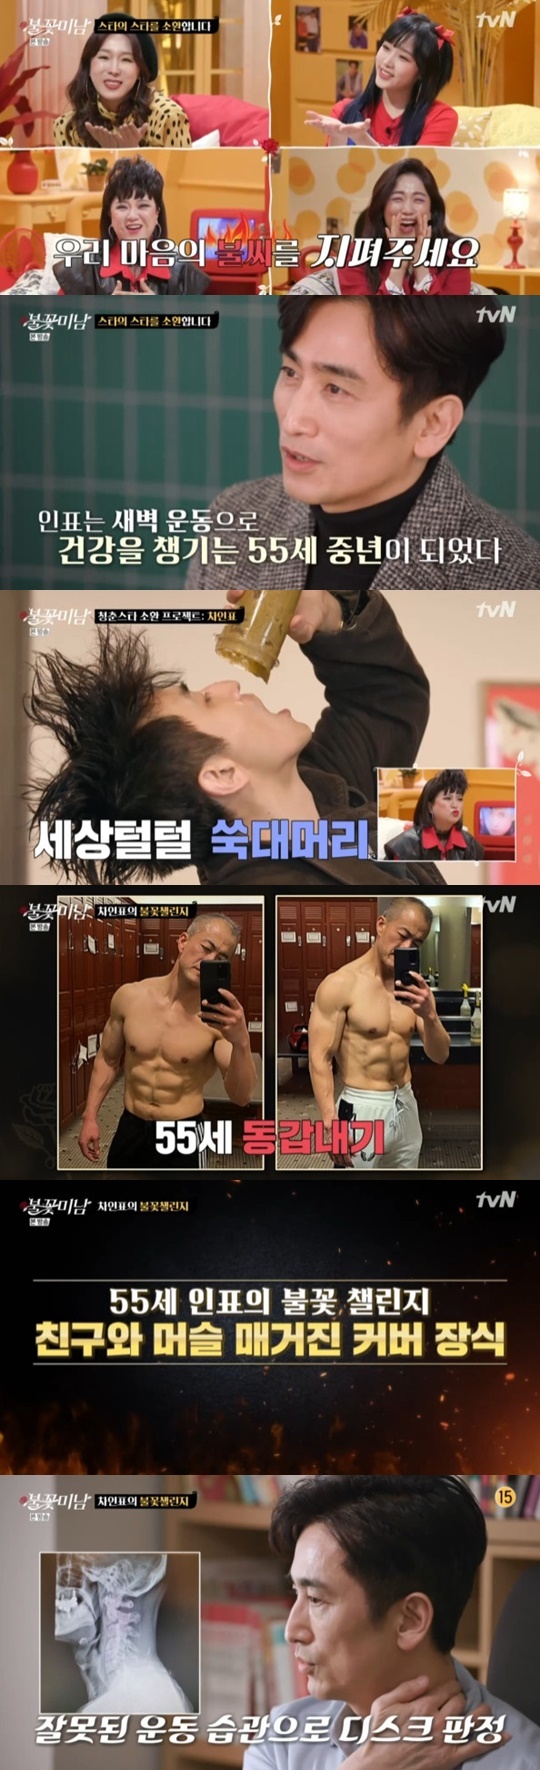 tvN STORY &apos;Ҳɹ̳&apos; &copy; 1